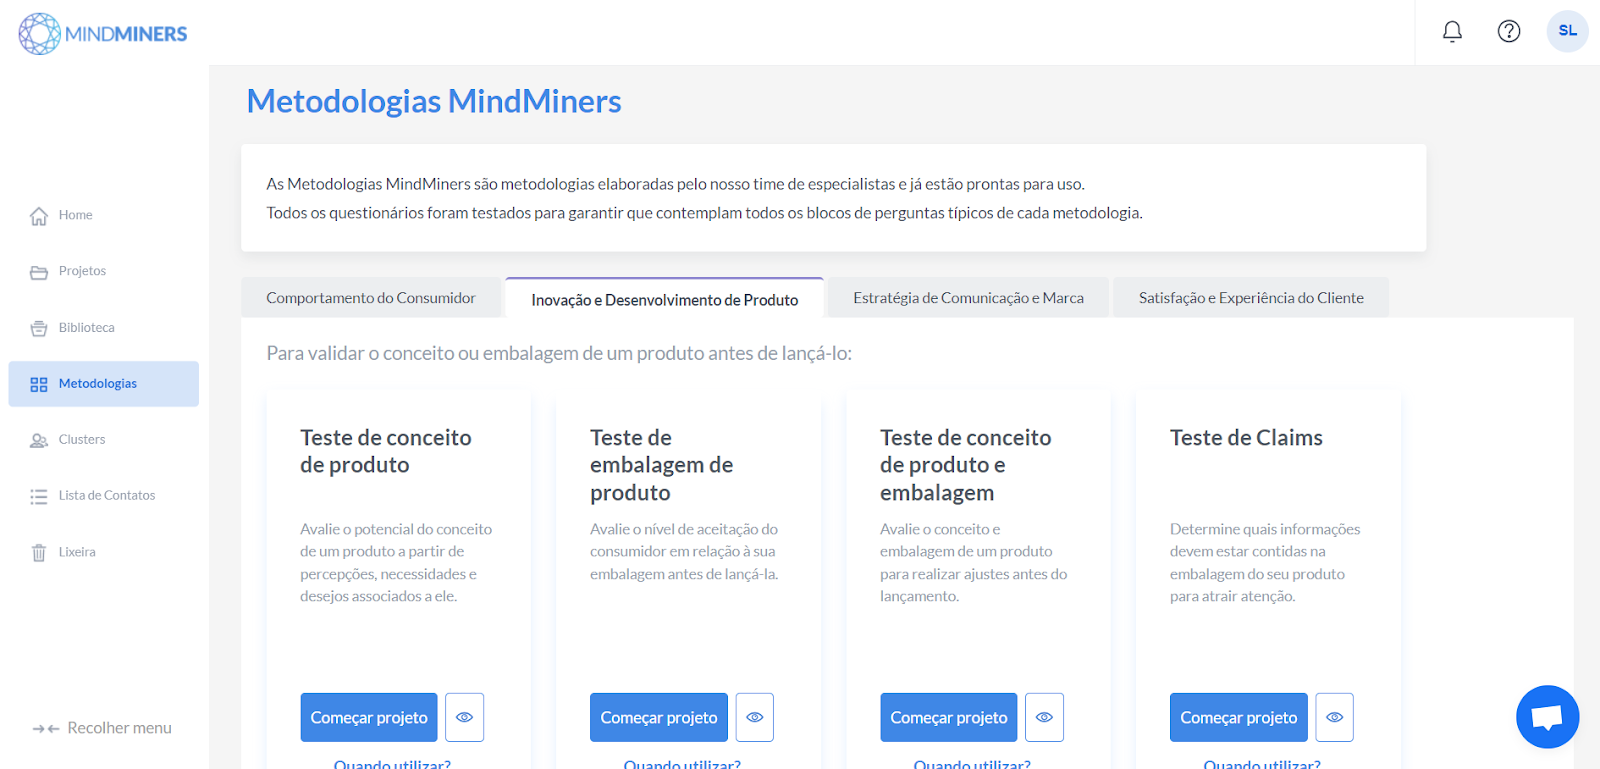 Como criar uma pesquisa de teste de conceito de produto com a MindMiners